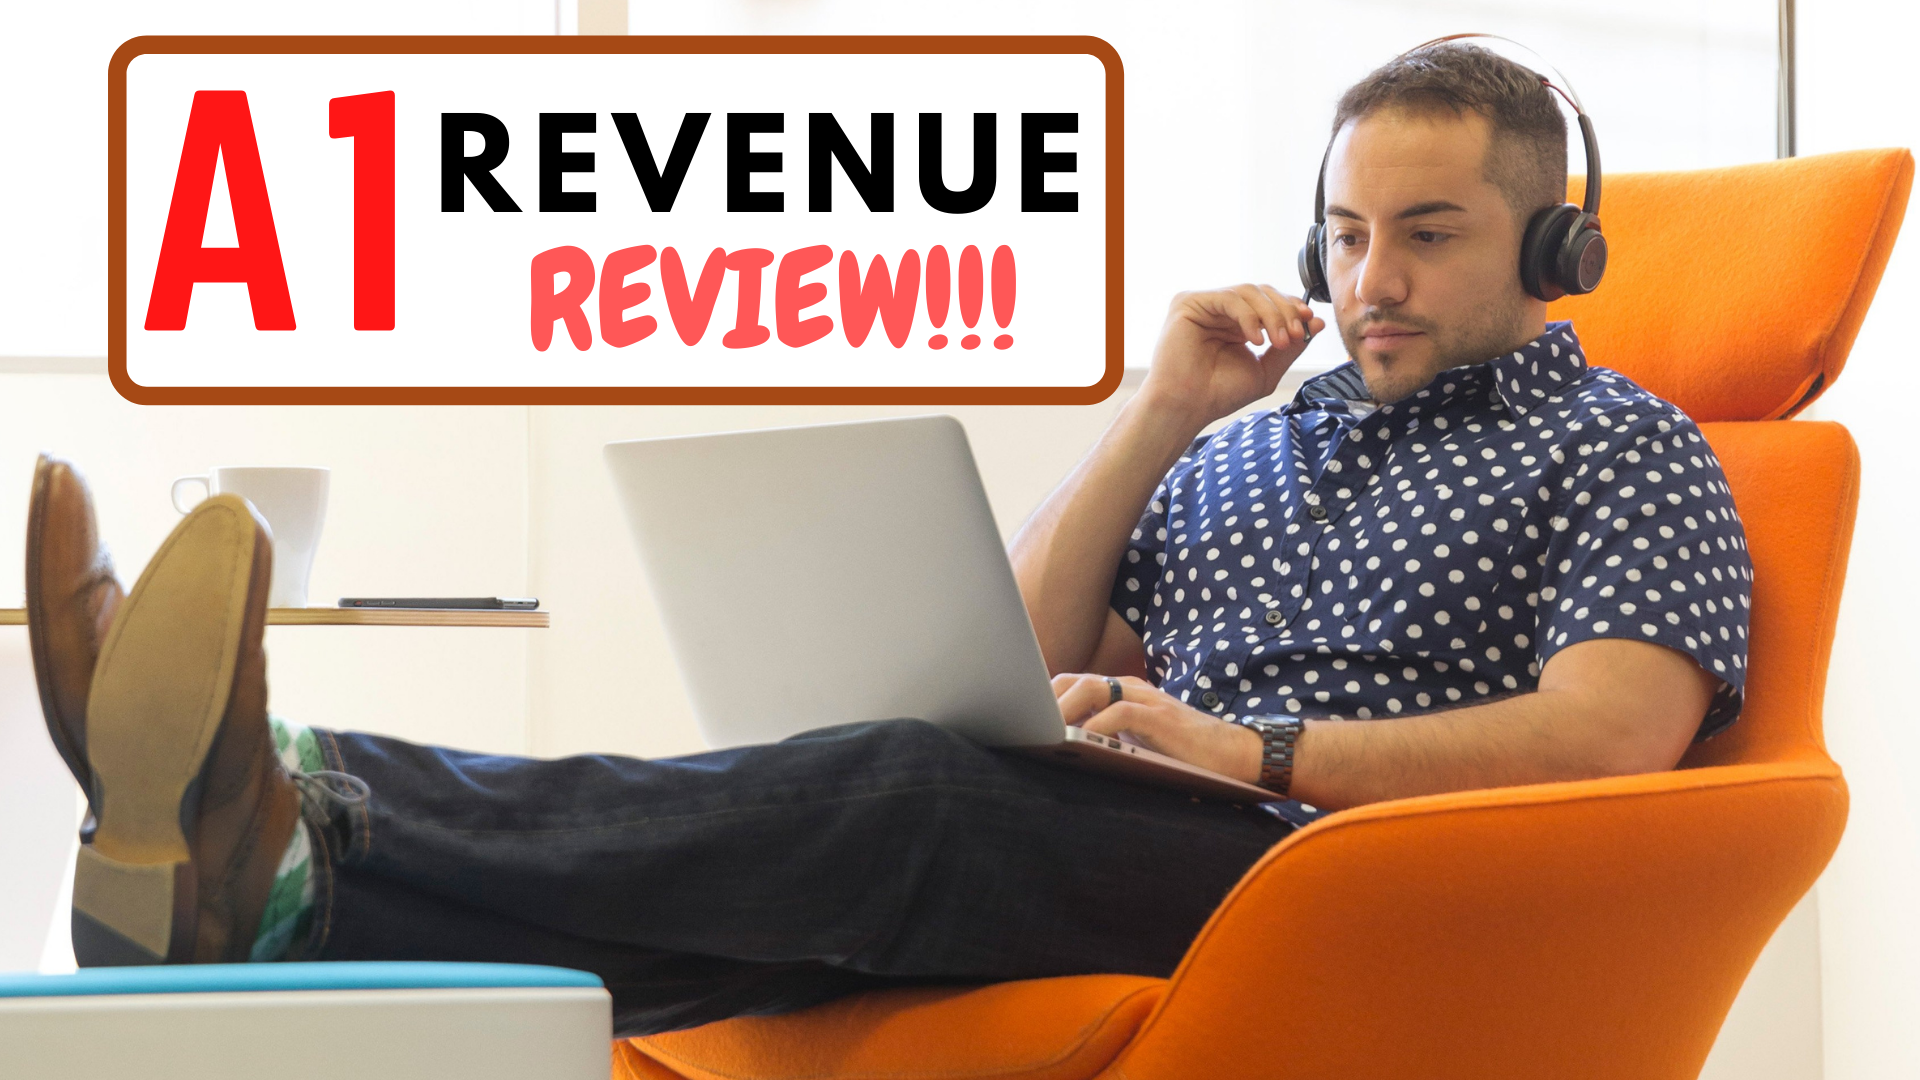 A1 Revenue Review